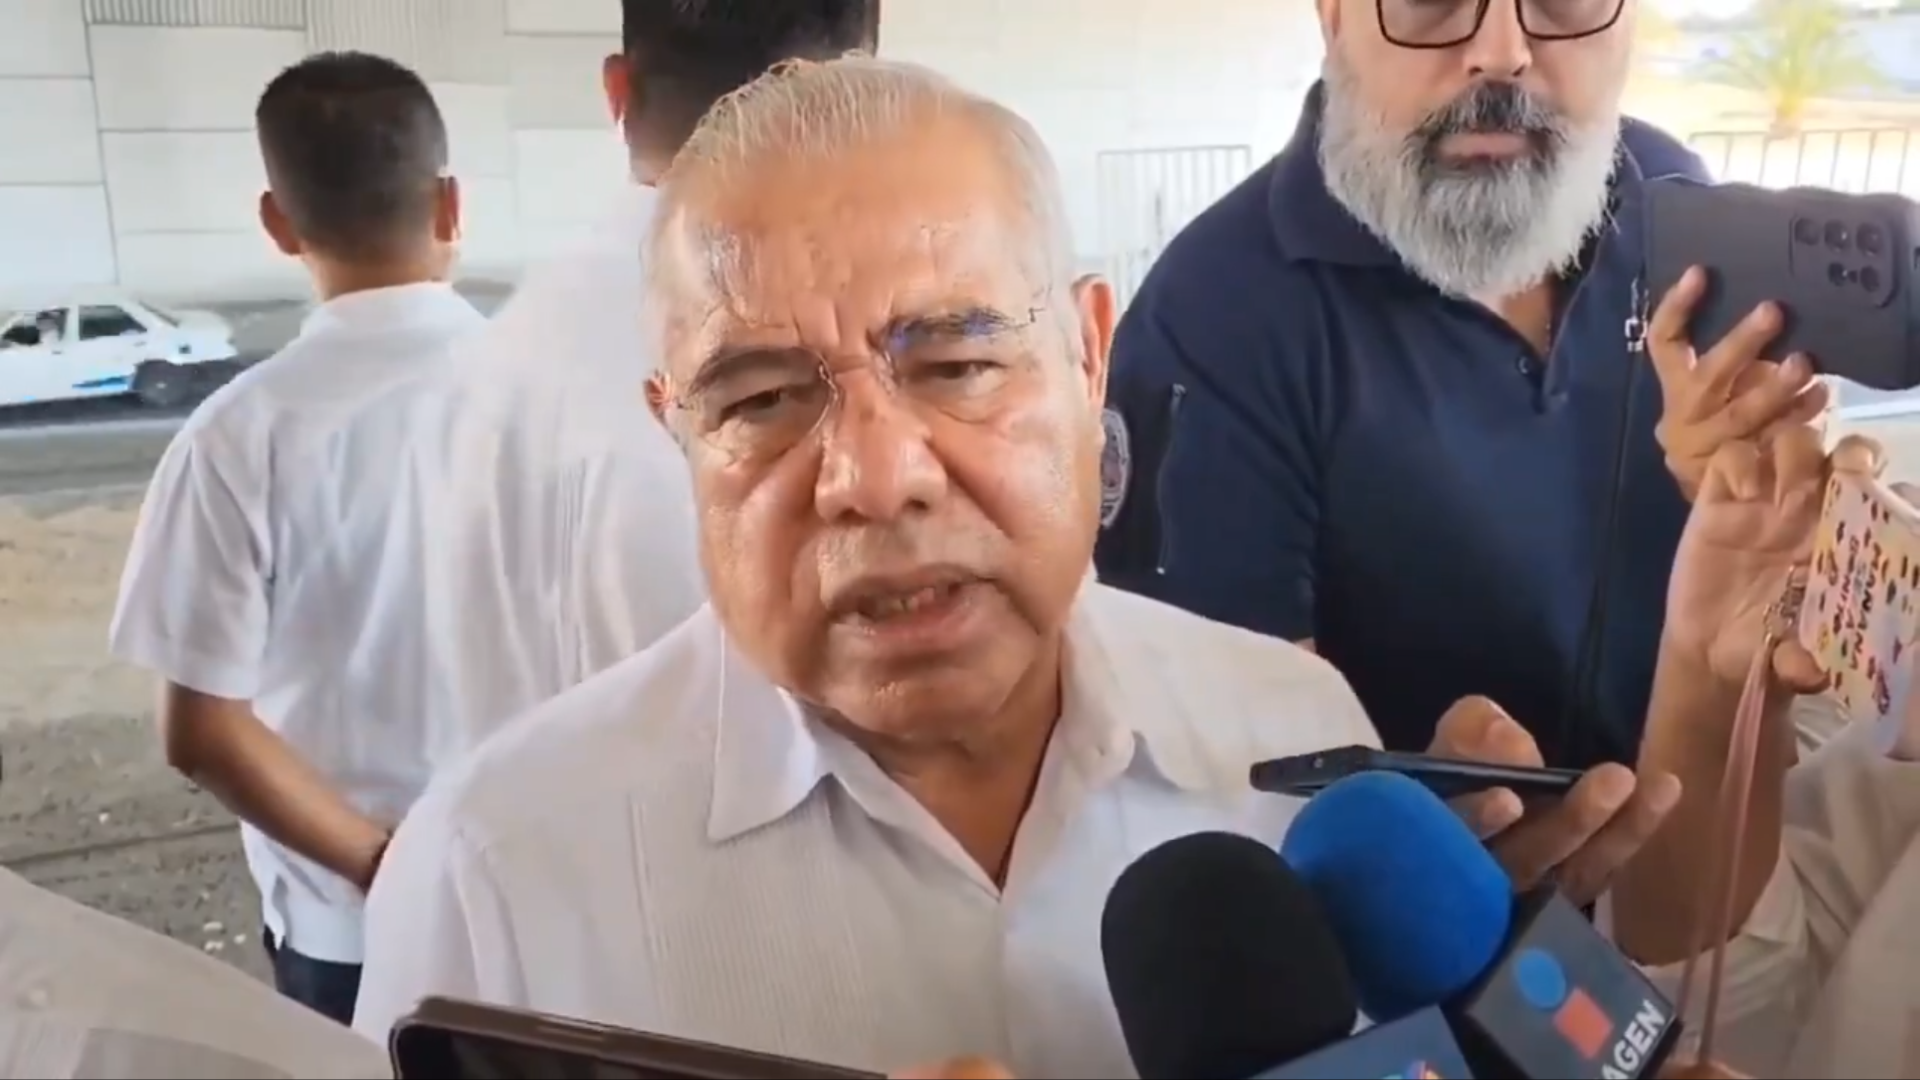 En Morelos… Sigue en duda si el obispo Salvador Rangel fue víctima o no de un secuestro express